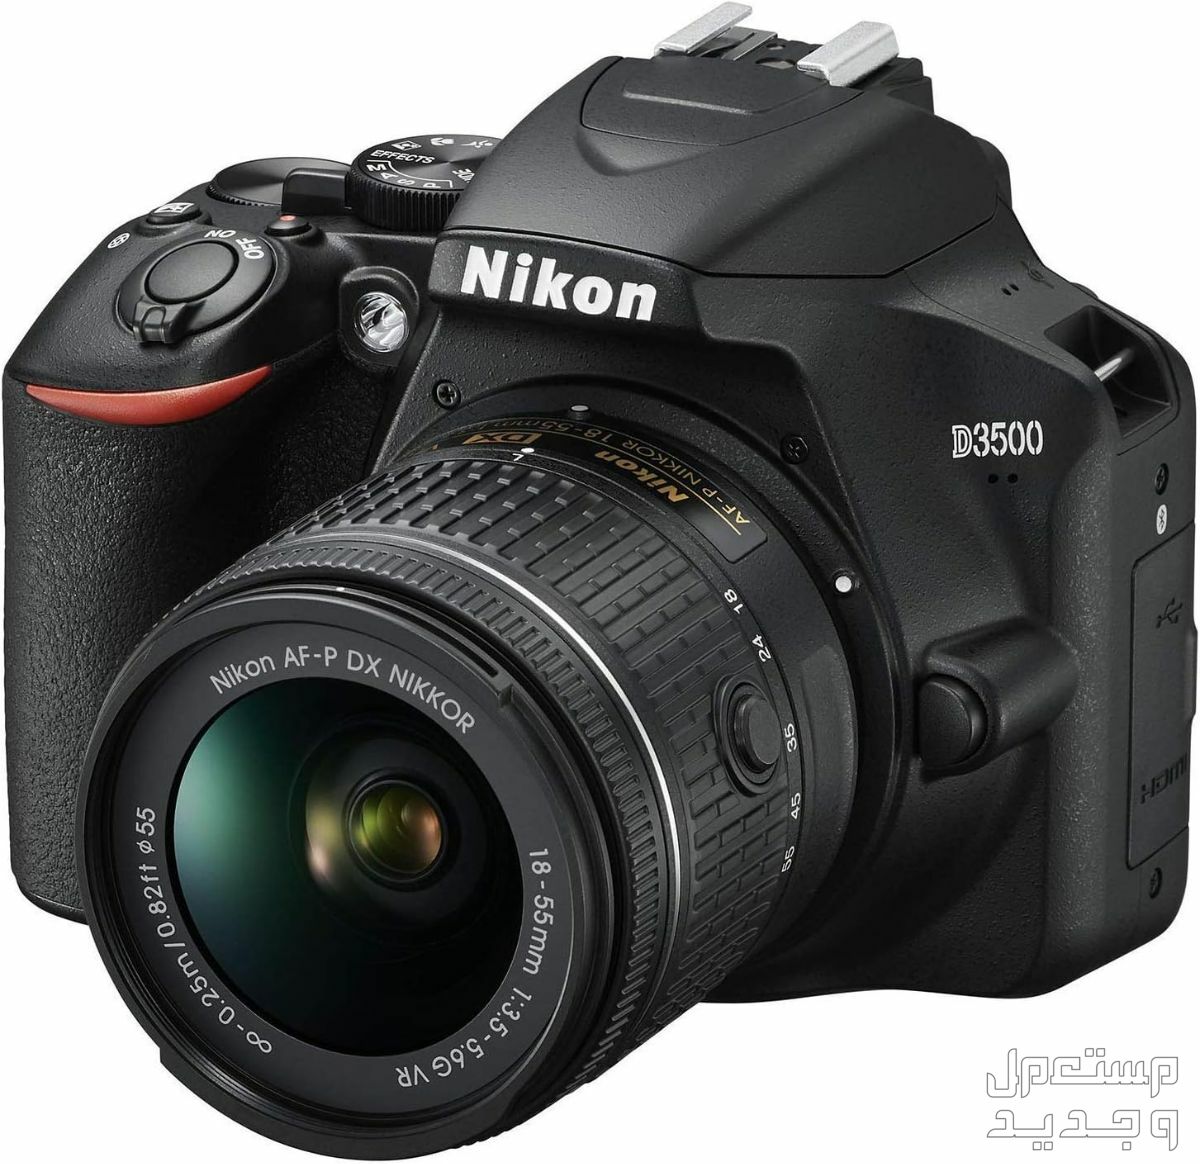 10 كاميرات تصوير ماركات عالمية بأسعار رخيصة في المغرب مميزات كاميرا Nikon D3500